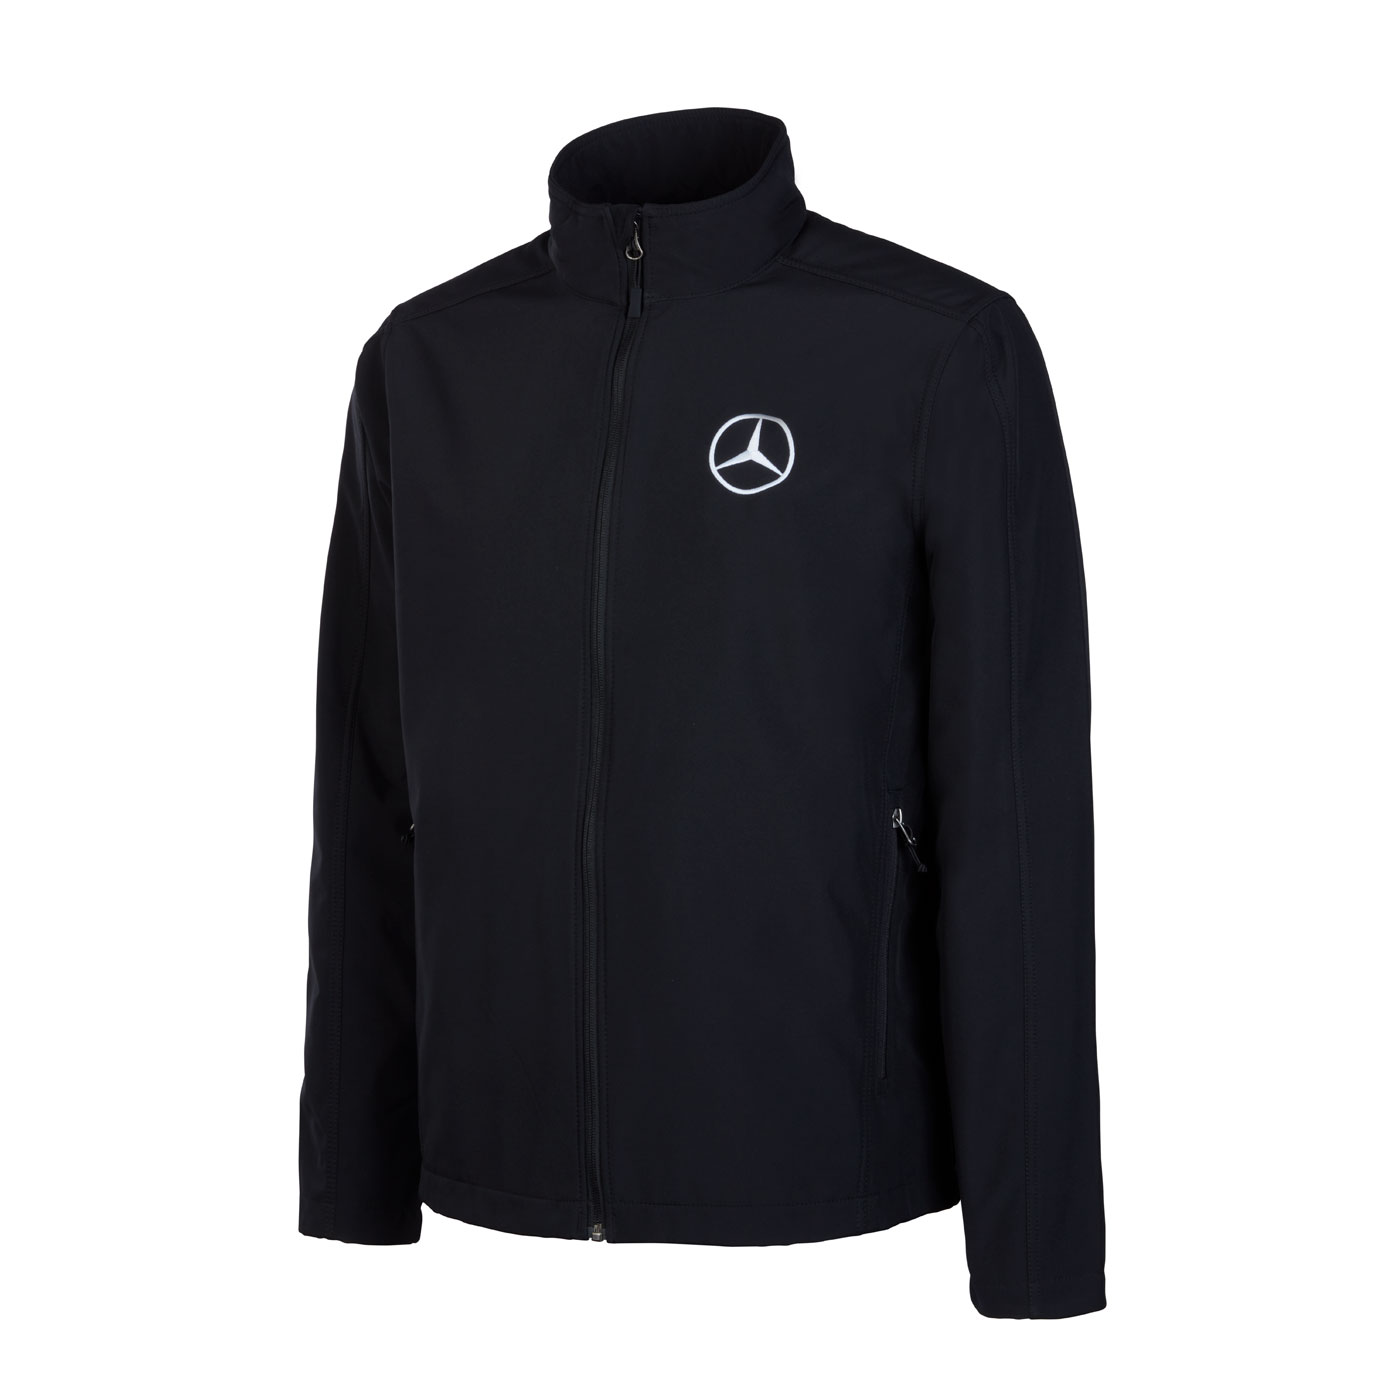 Mercedes benz jacket - .de